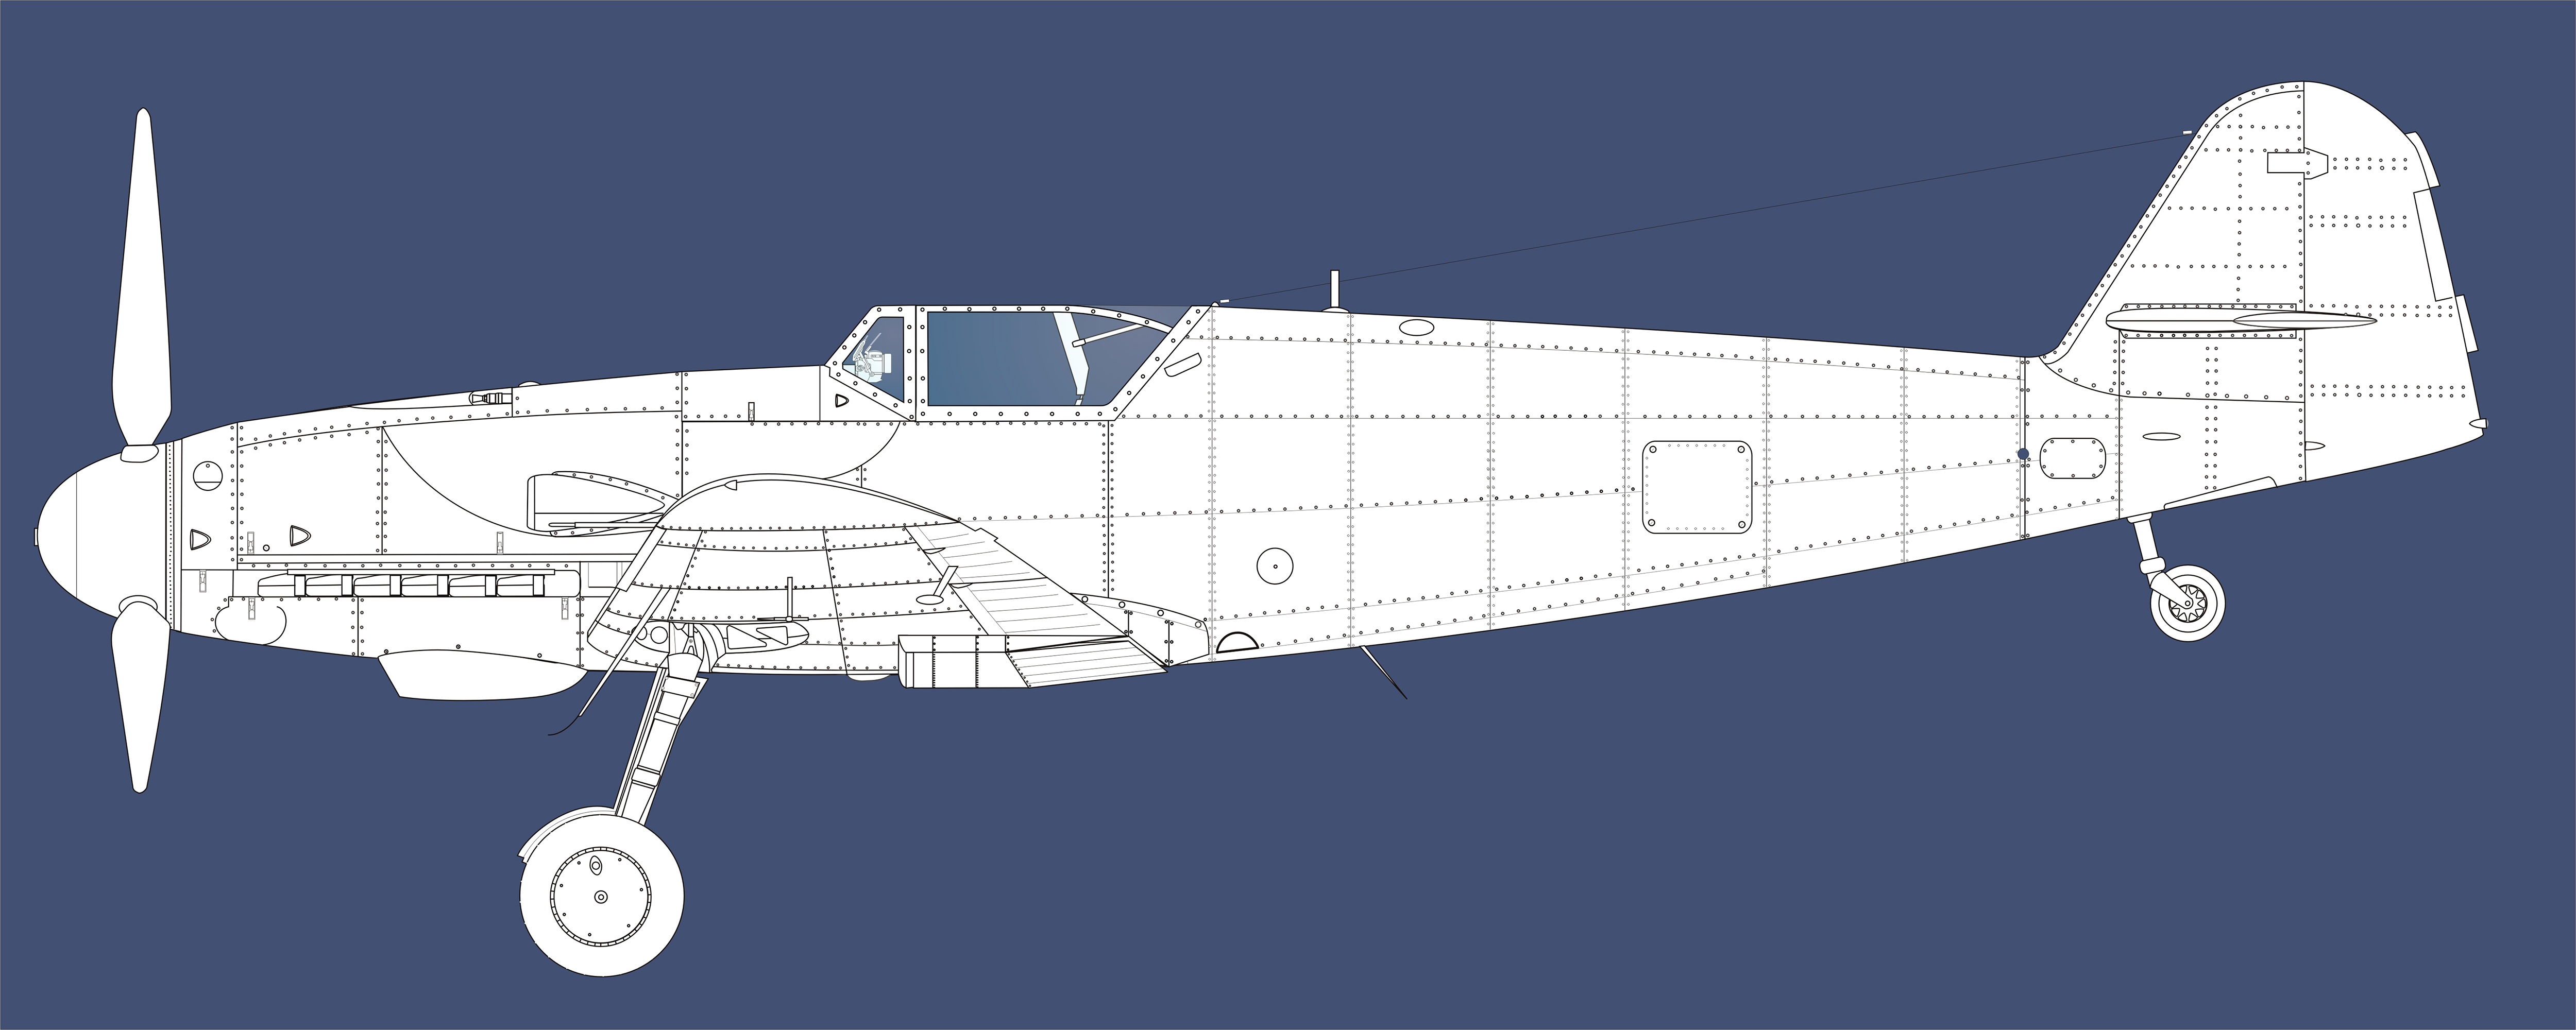 Artwork Messerschmitt Line drawing Bf 109G10 Large Blue print 01